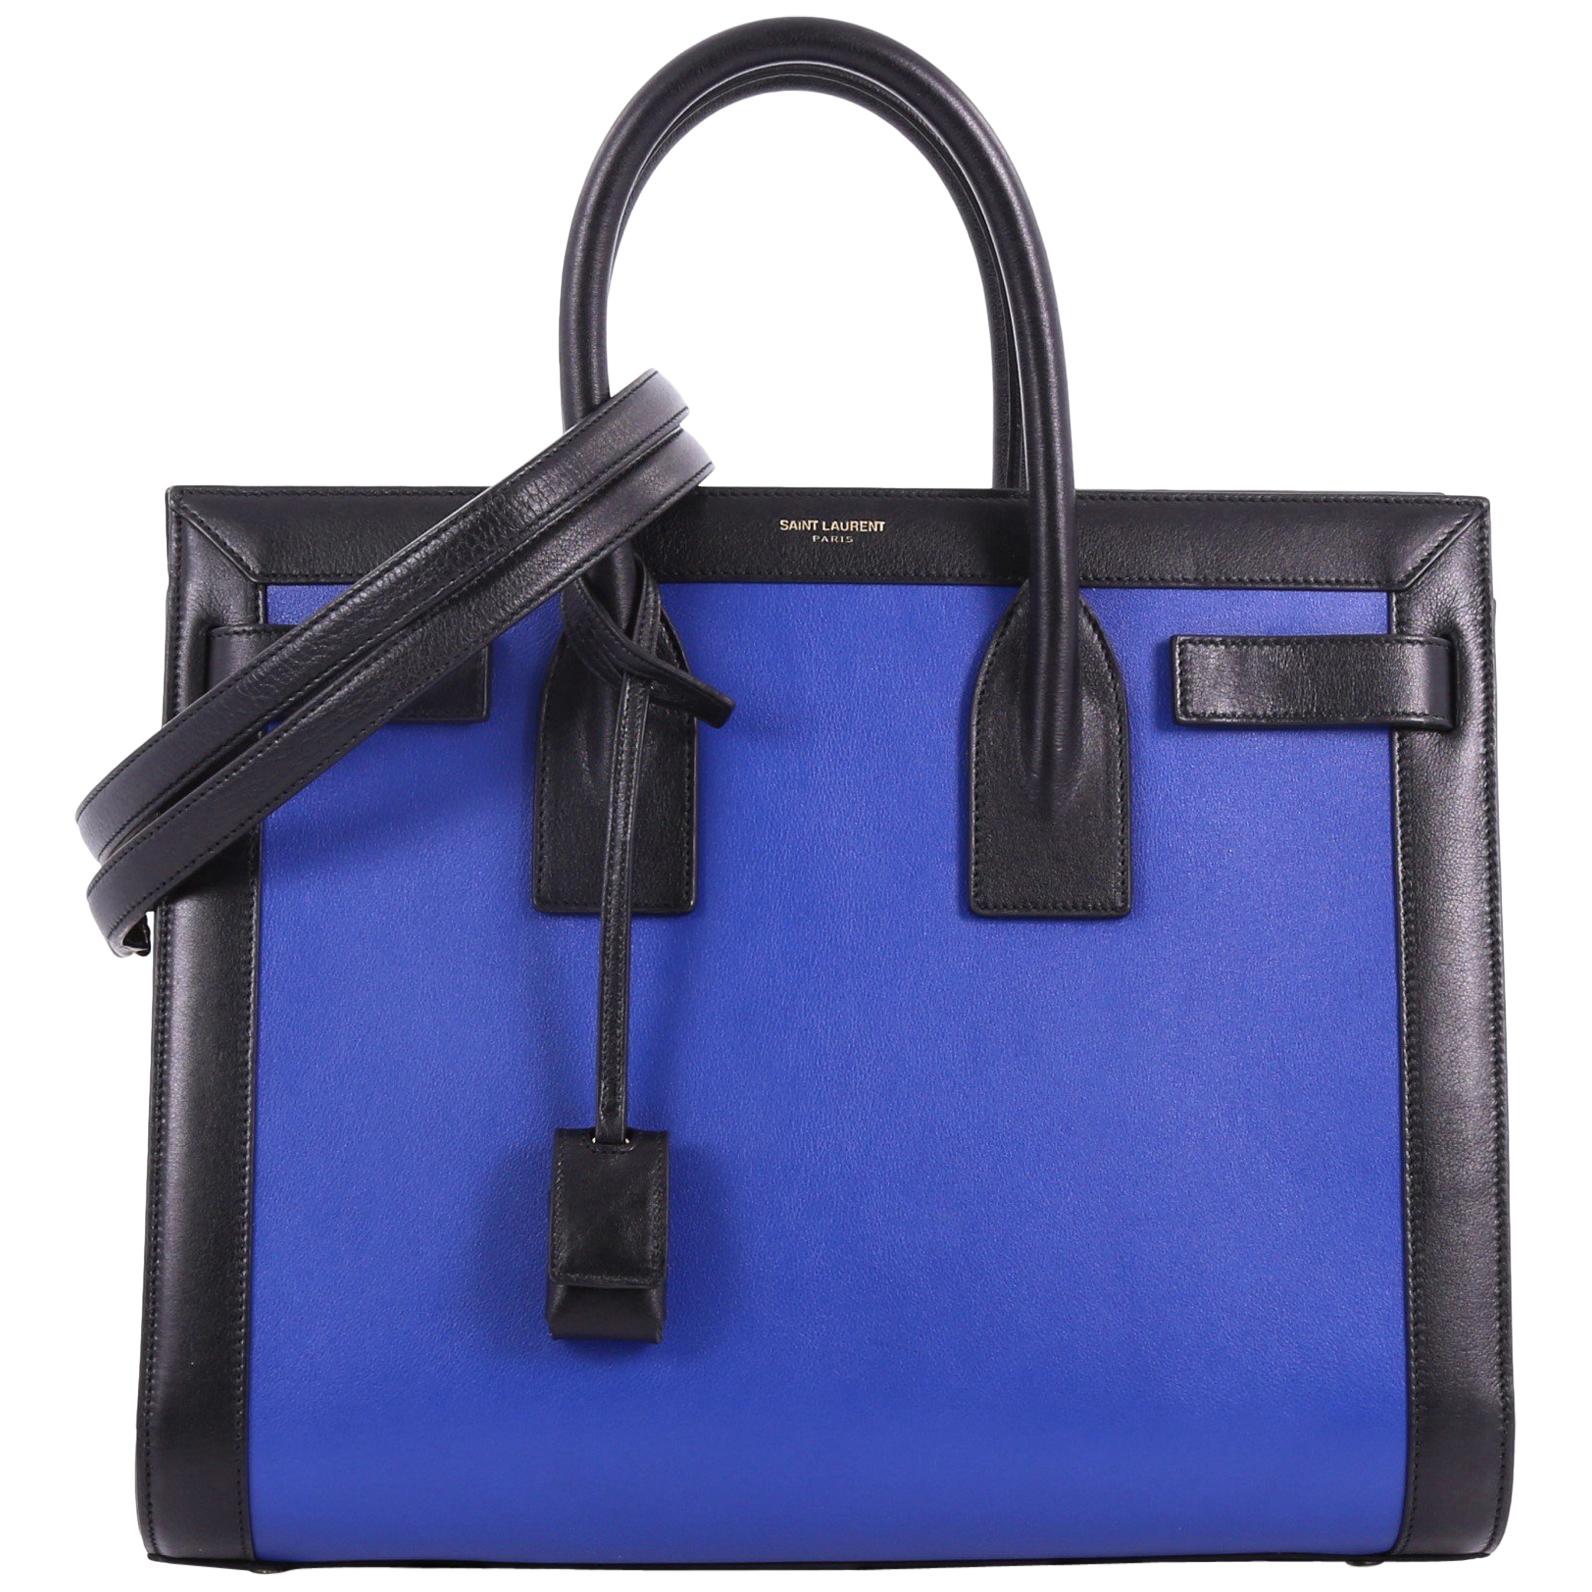 Saint Laurent Bicolor Sac de Jour Handbag Leather Small